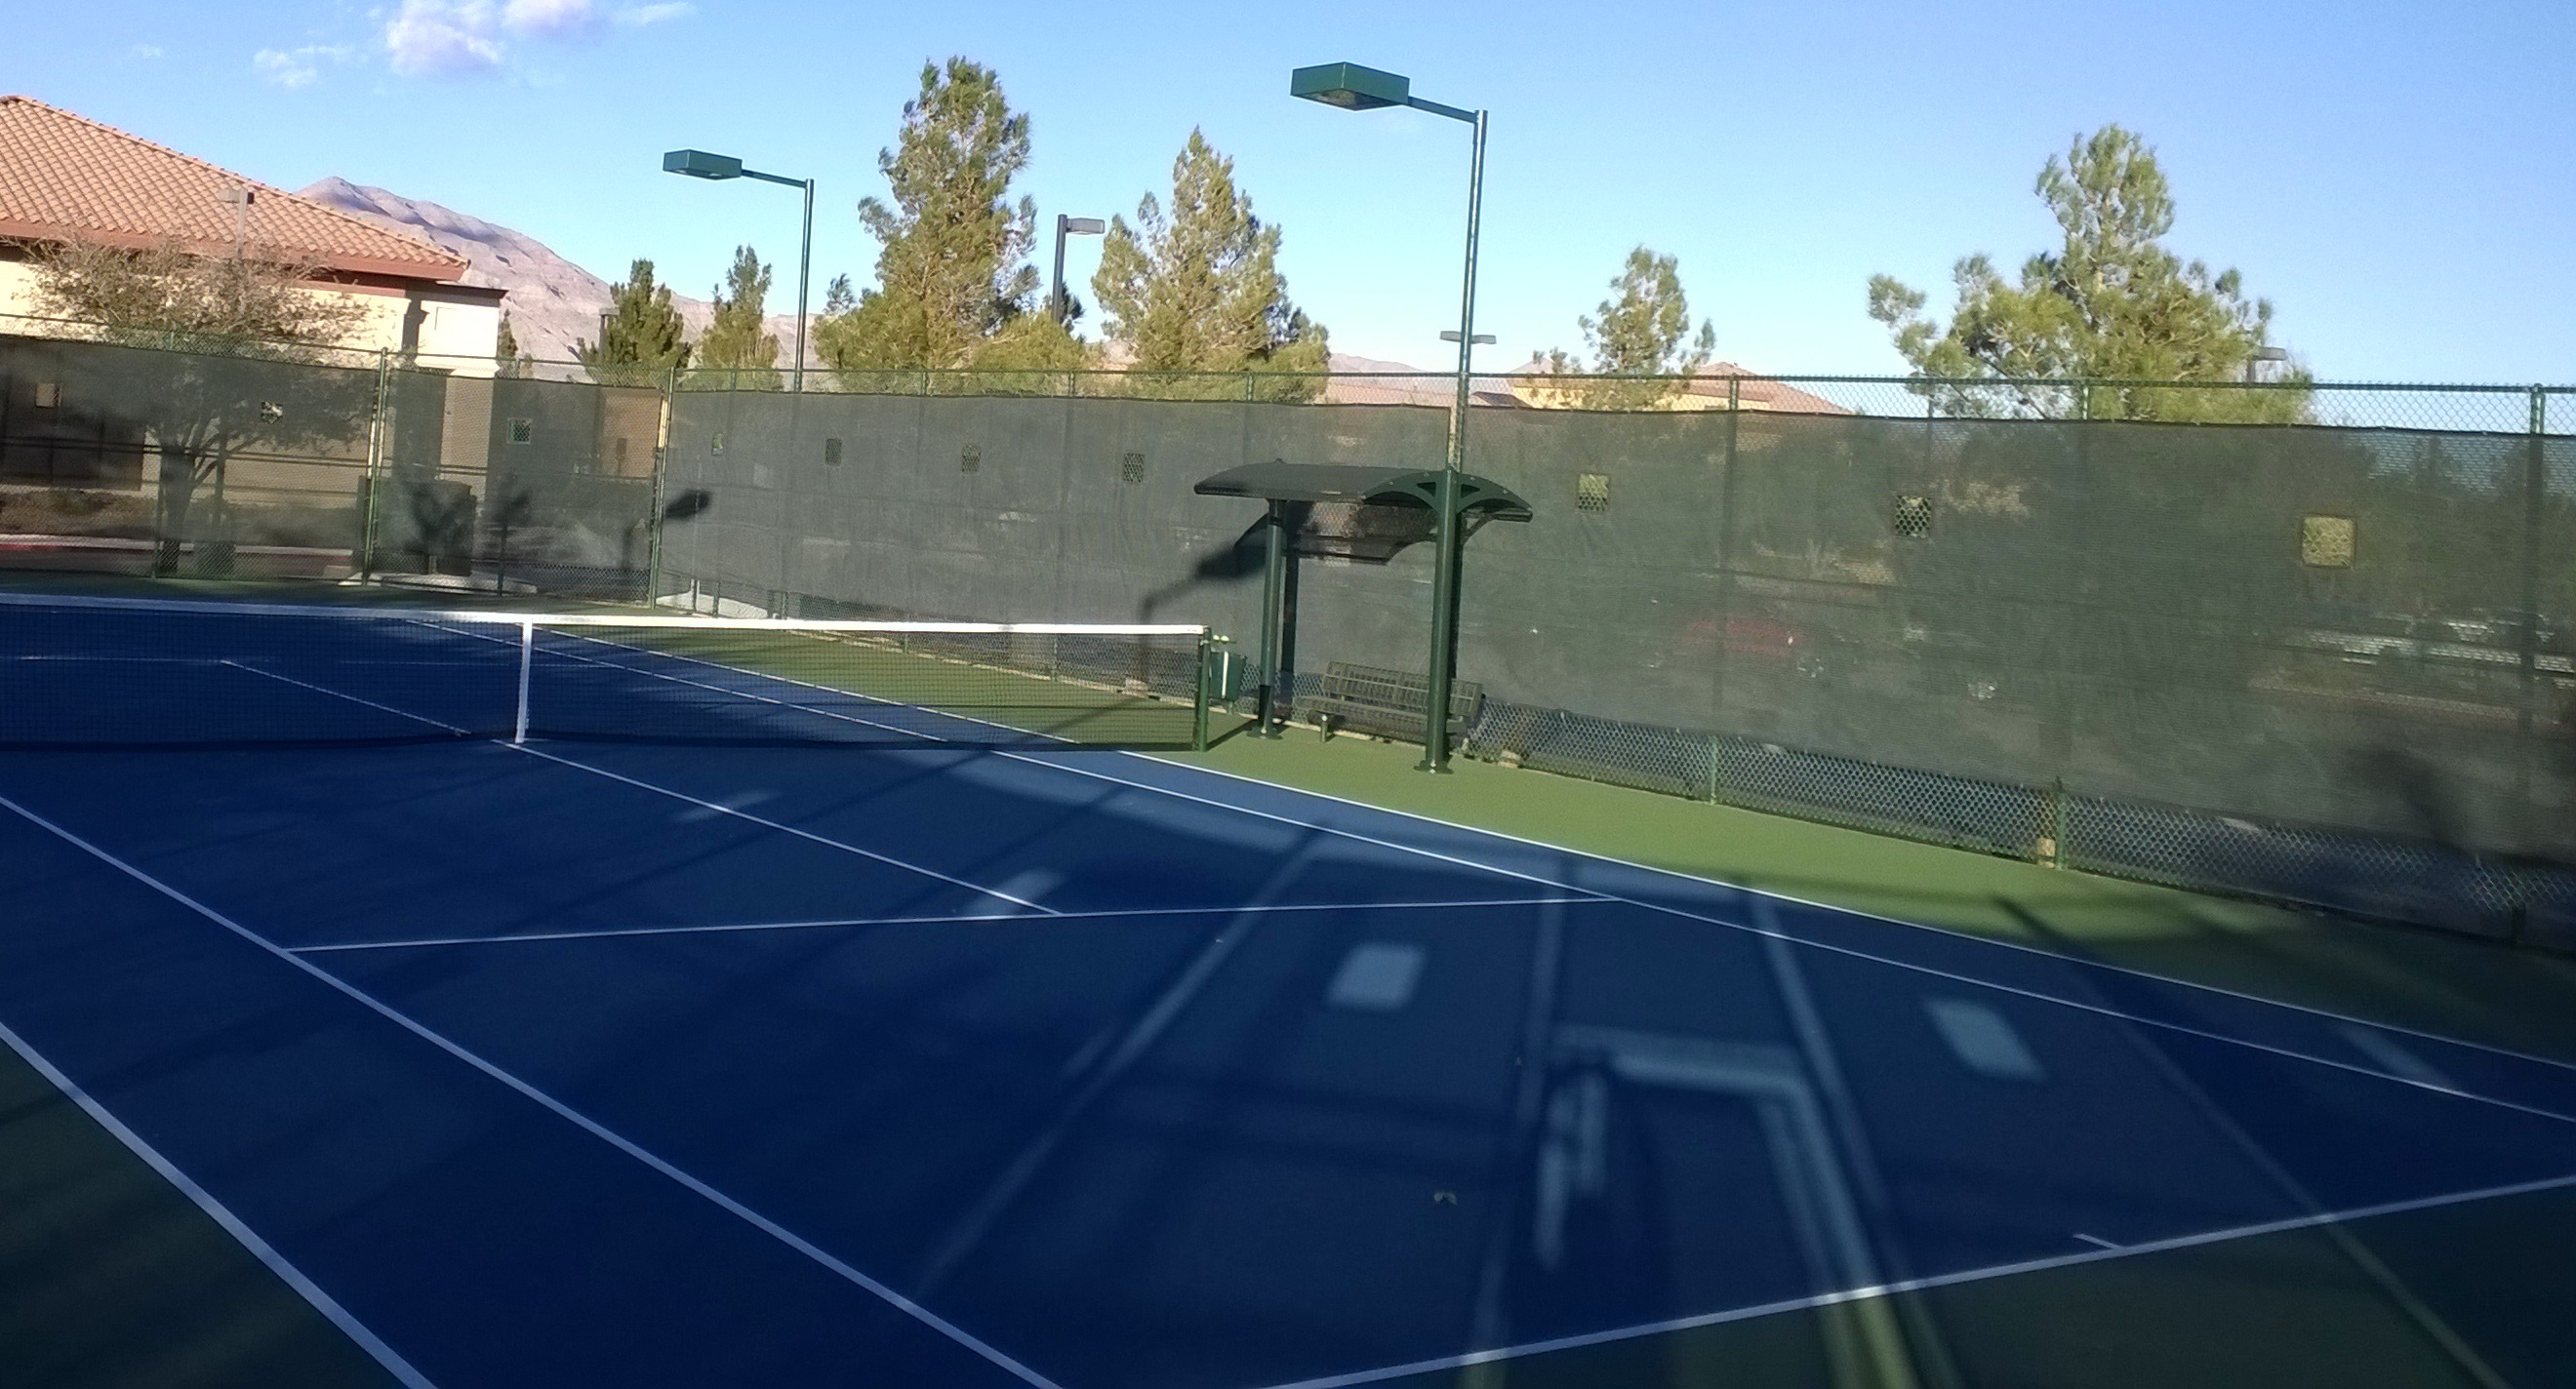 Aliante Community Tennis Court Expansion